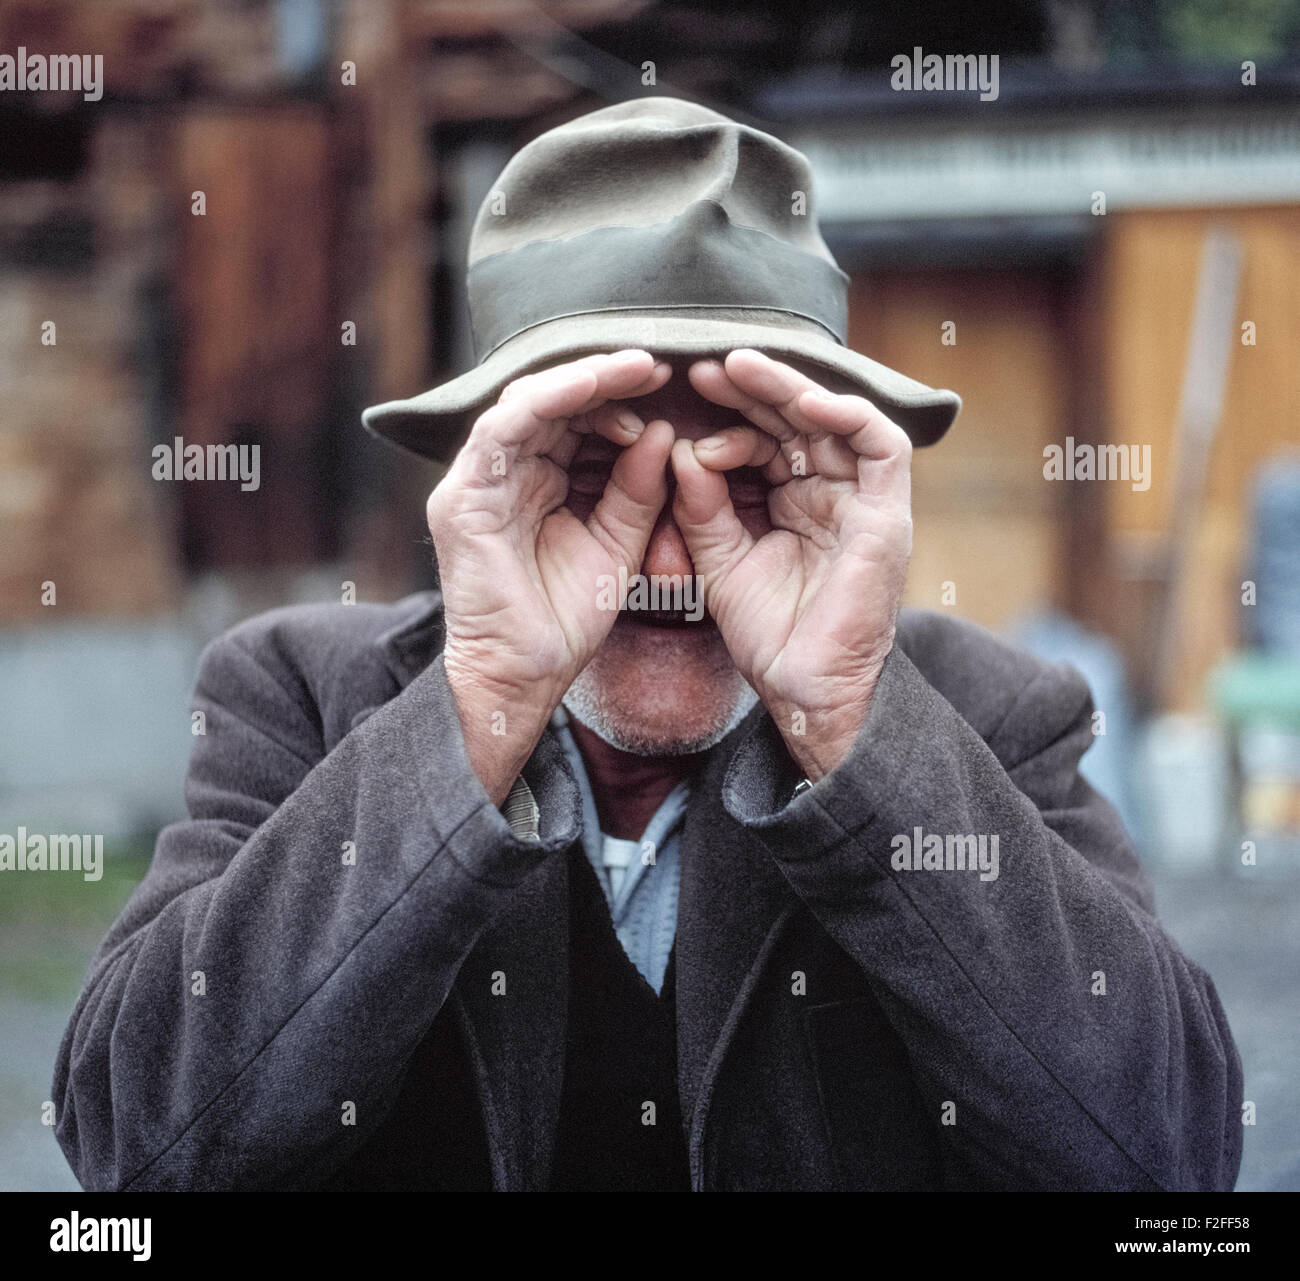 Ein ergrauten Greis in der Schweiz Tassen für die Kamera indem man seine Hände, seine Augen zu behaupten sucht er durch ein Fernglas auf den Fotografen auszuspionieren. Stockfoto